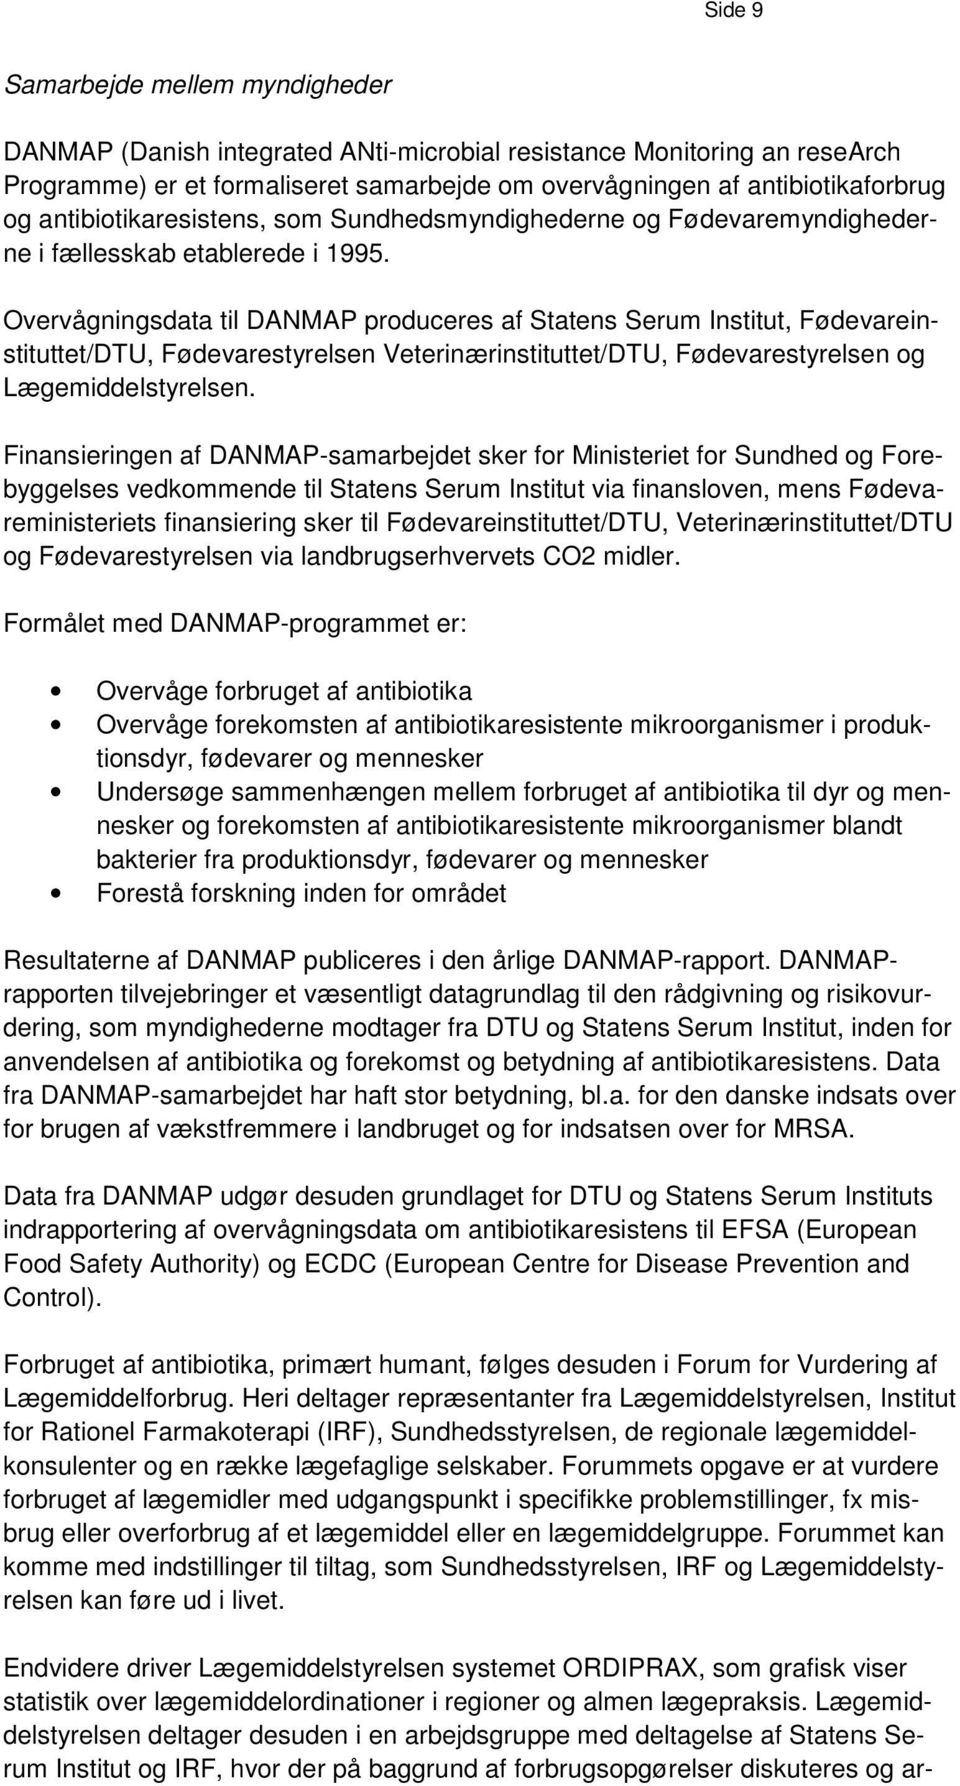 Overvågningsdata til DANMAP produceres af Statens Serum Institut, Fødevareinstituttet/DTU, Fødevarestyrelsen Veterinærinstituttet/DTU, Fødevarestyrelsen og Lægemiddelstyrelsen.